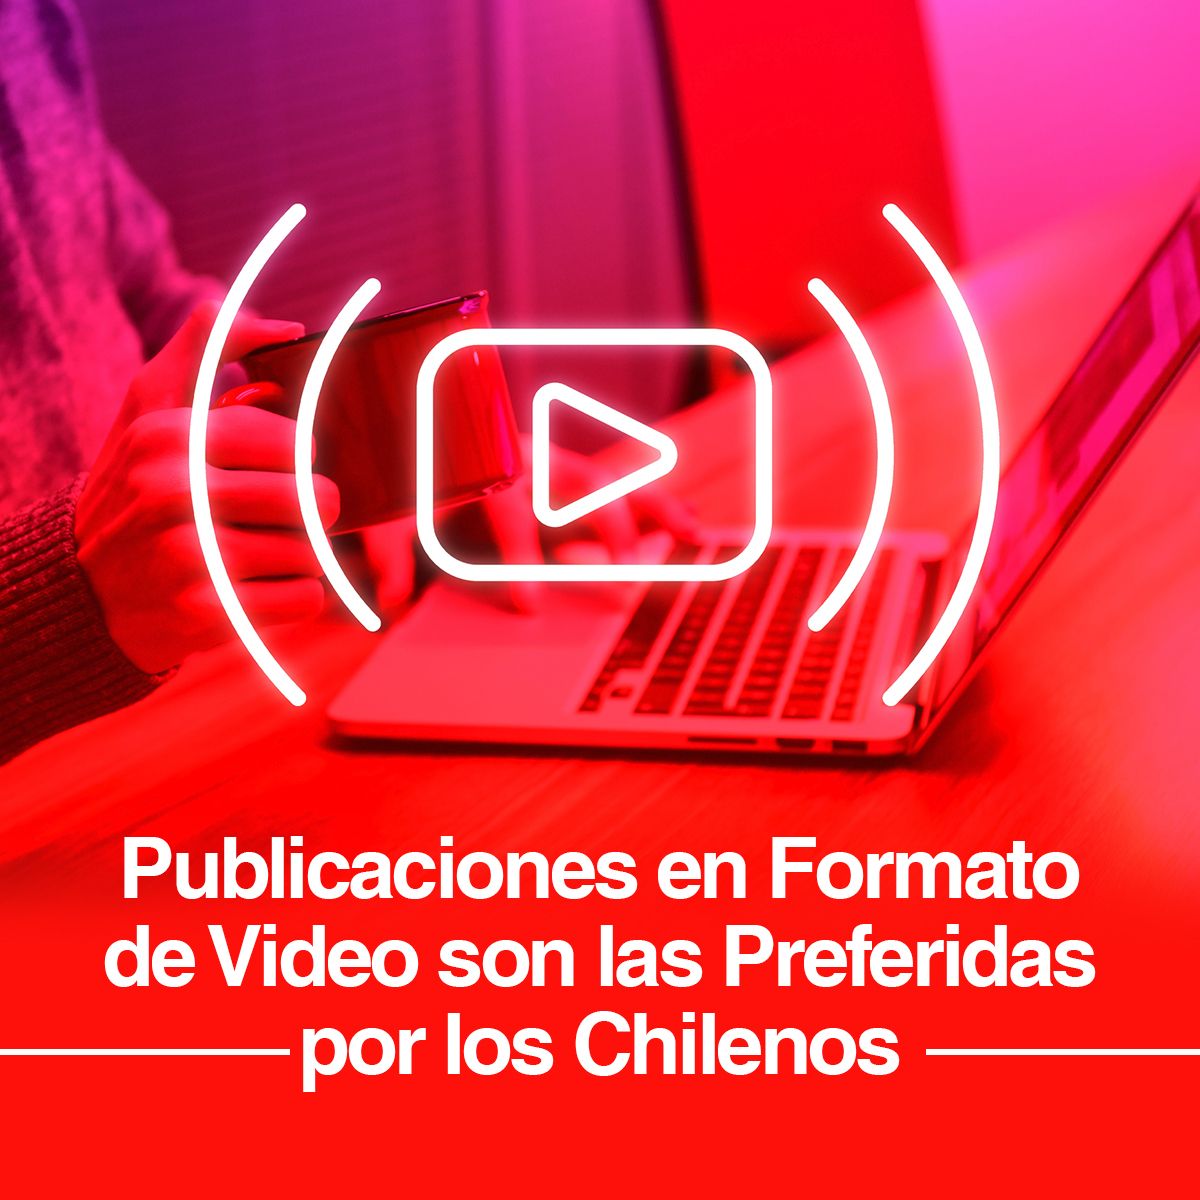 Publicaciones en Formato de Video son las Preferidas por los Chilenos